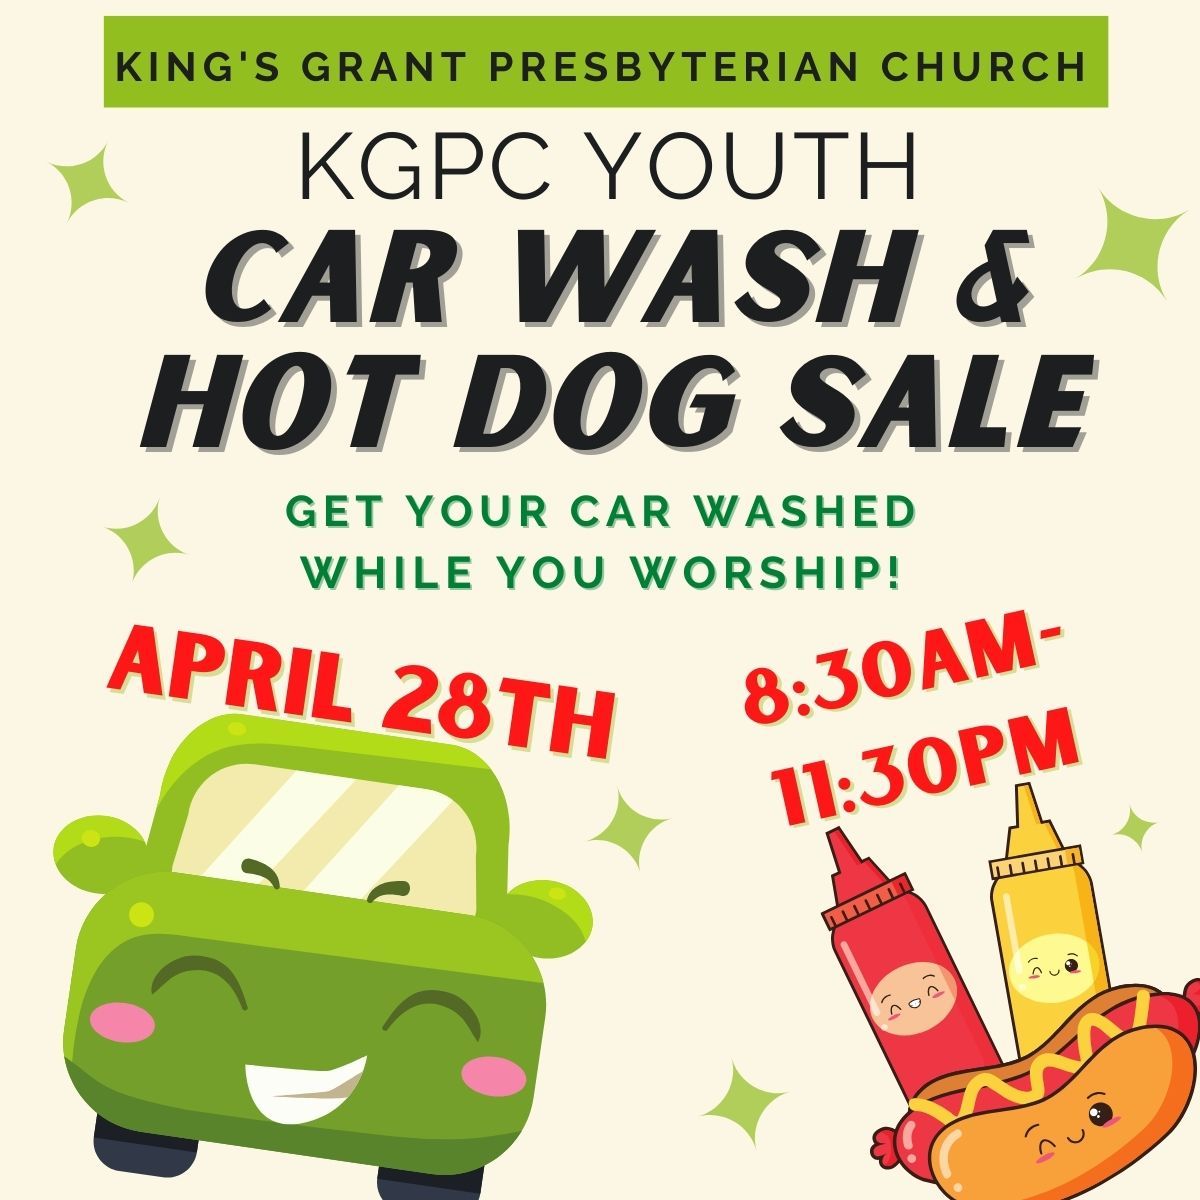 KGPC Youth Car Wash & Hot Dog Sale